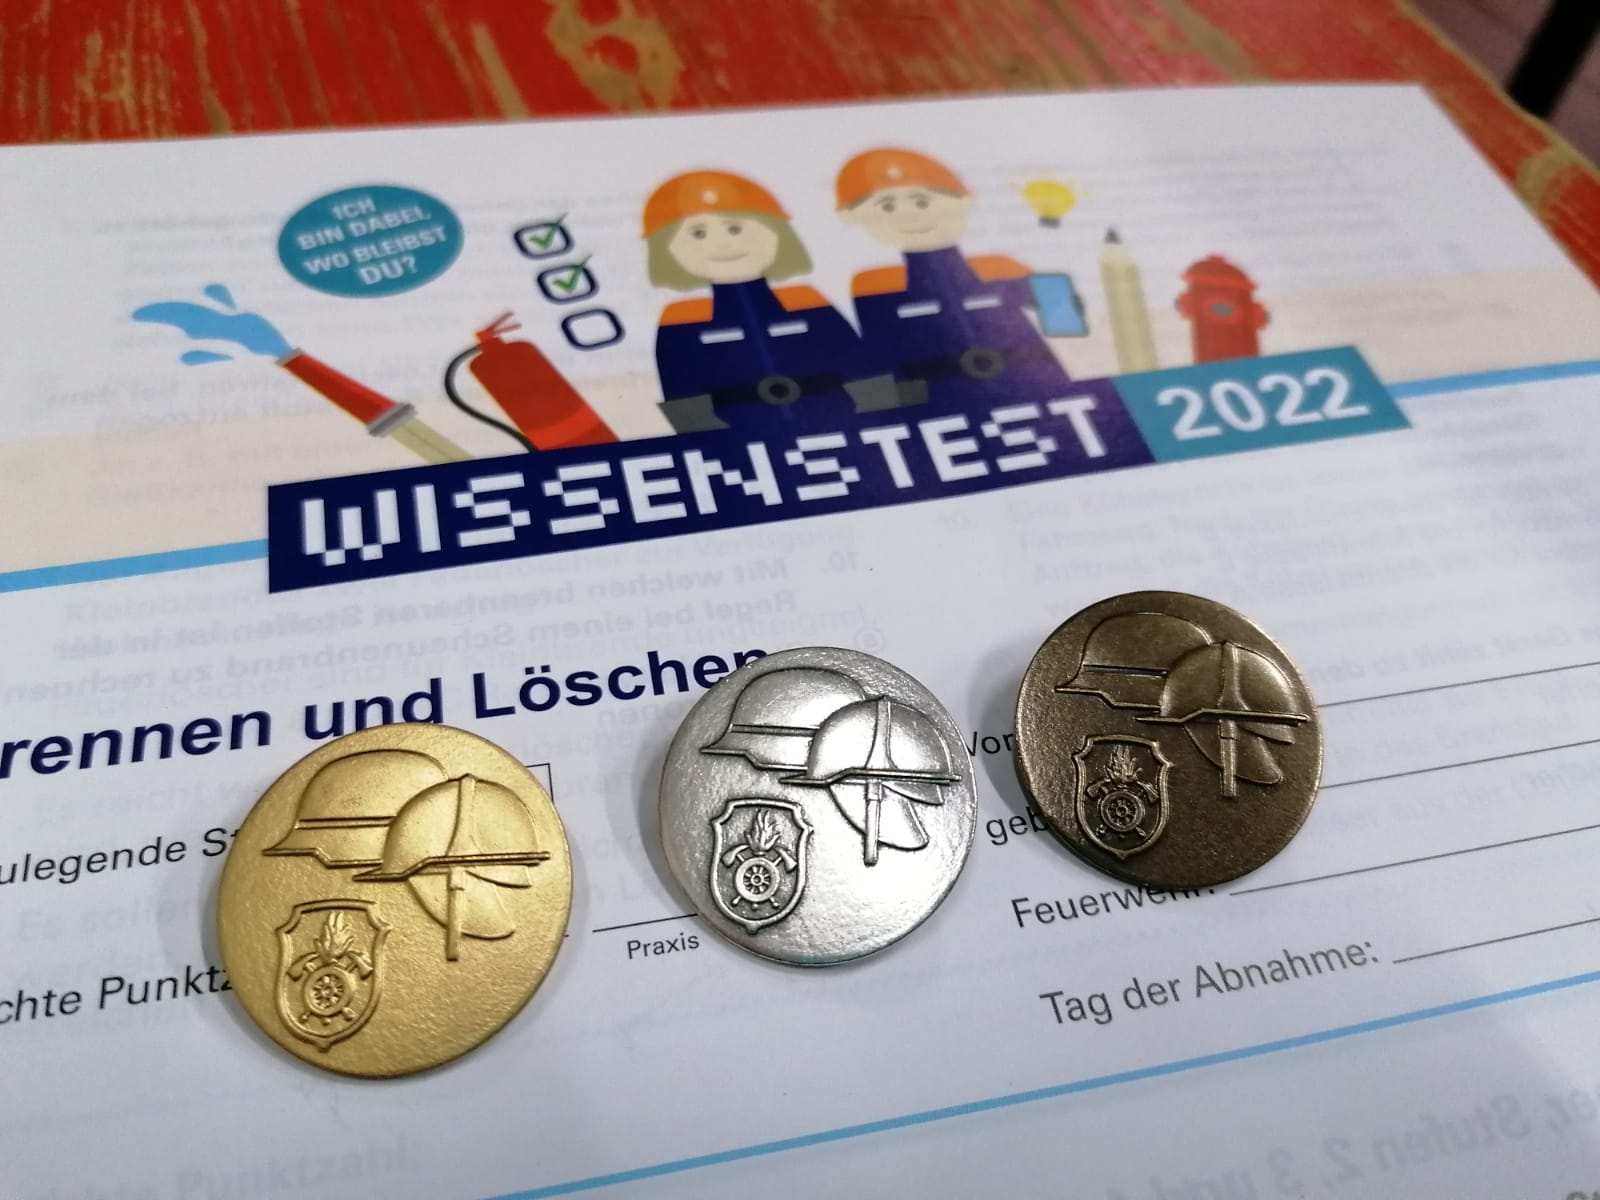 421 Buben und Mädchen der Jugendfeuerwehren aus dem Landkreis Traunstein absolvierten den Wissenstest 2022.absolvierten den 